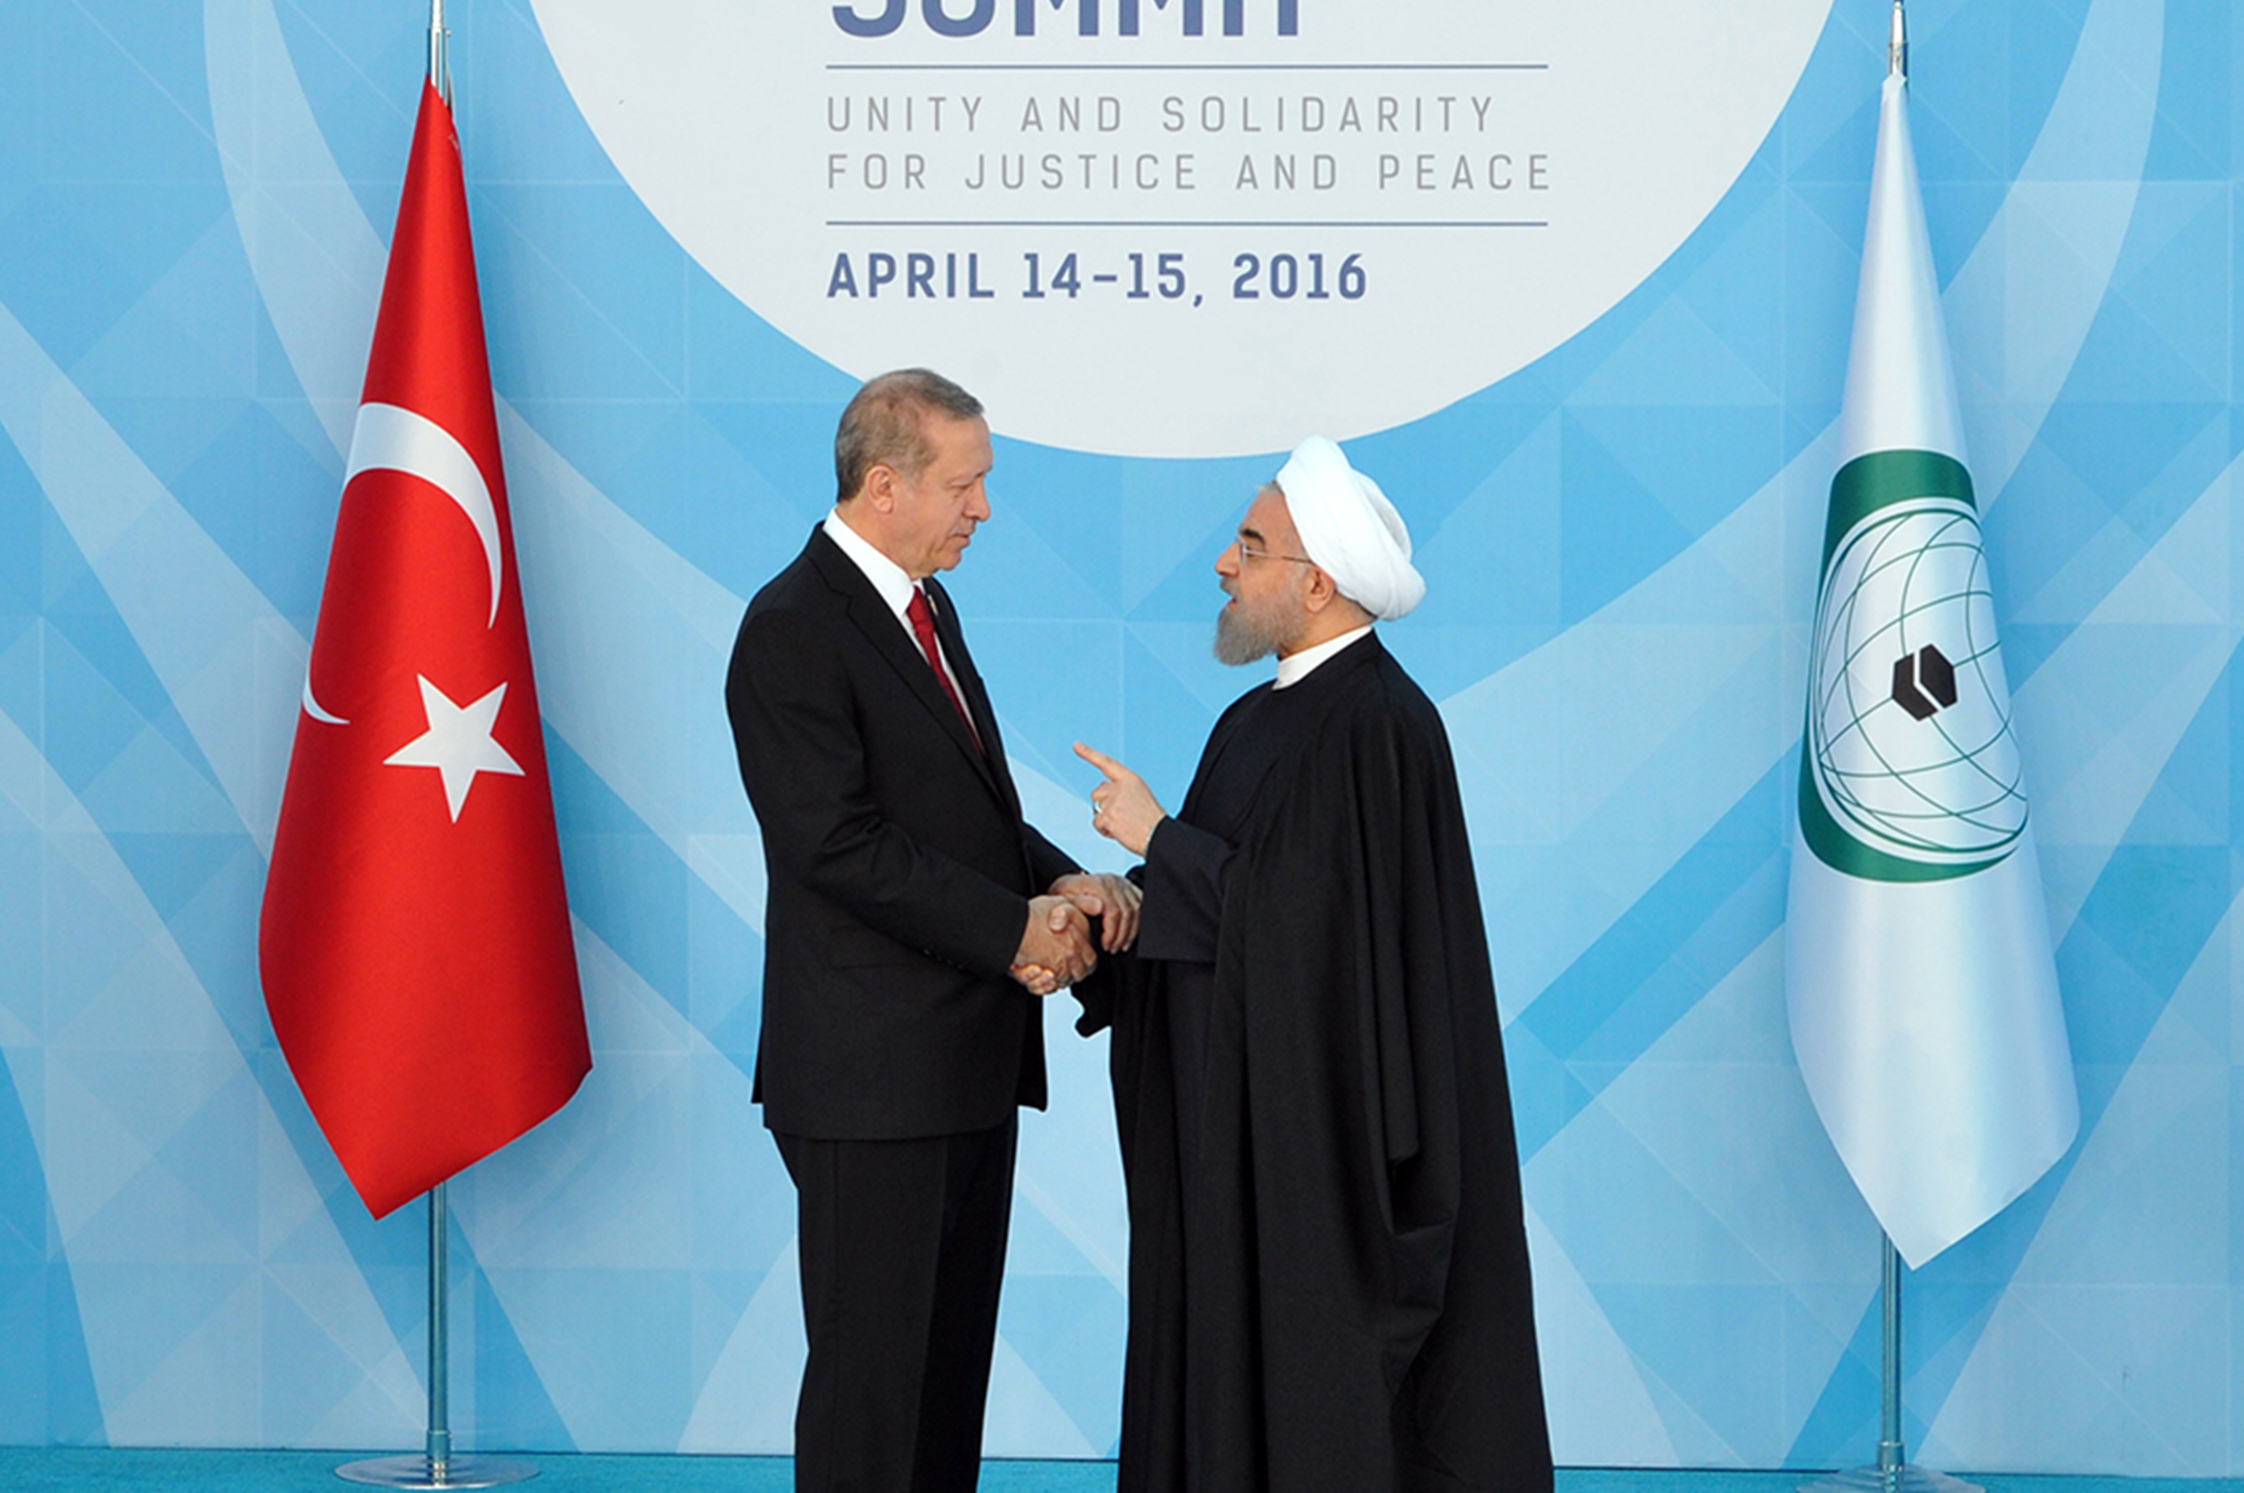 ماجرای عکس دکتر روحانی در دیدار با اردوغان که خبرساز شد / ژست پدر و پسری روحانی و اردوغان